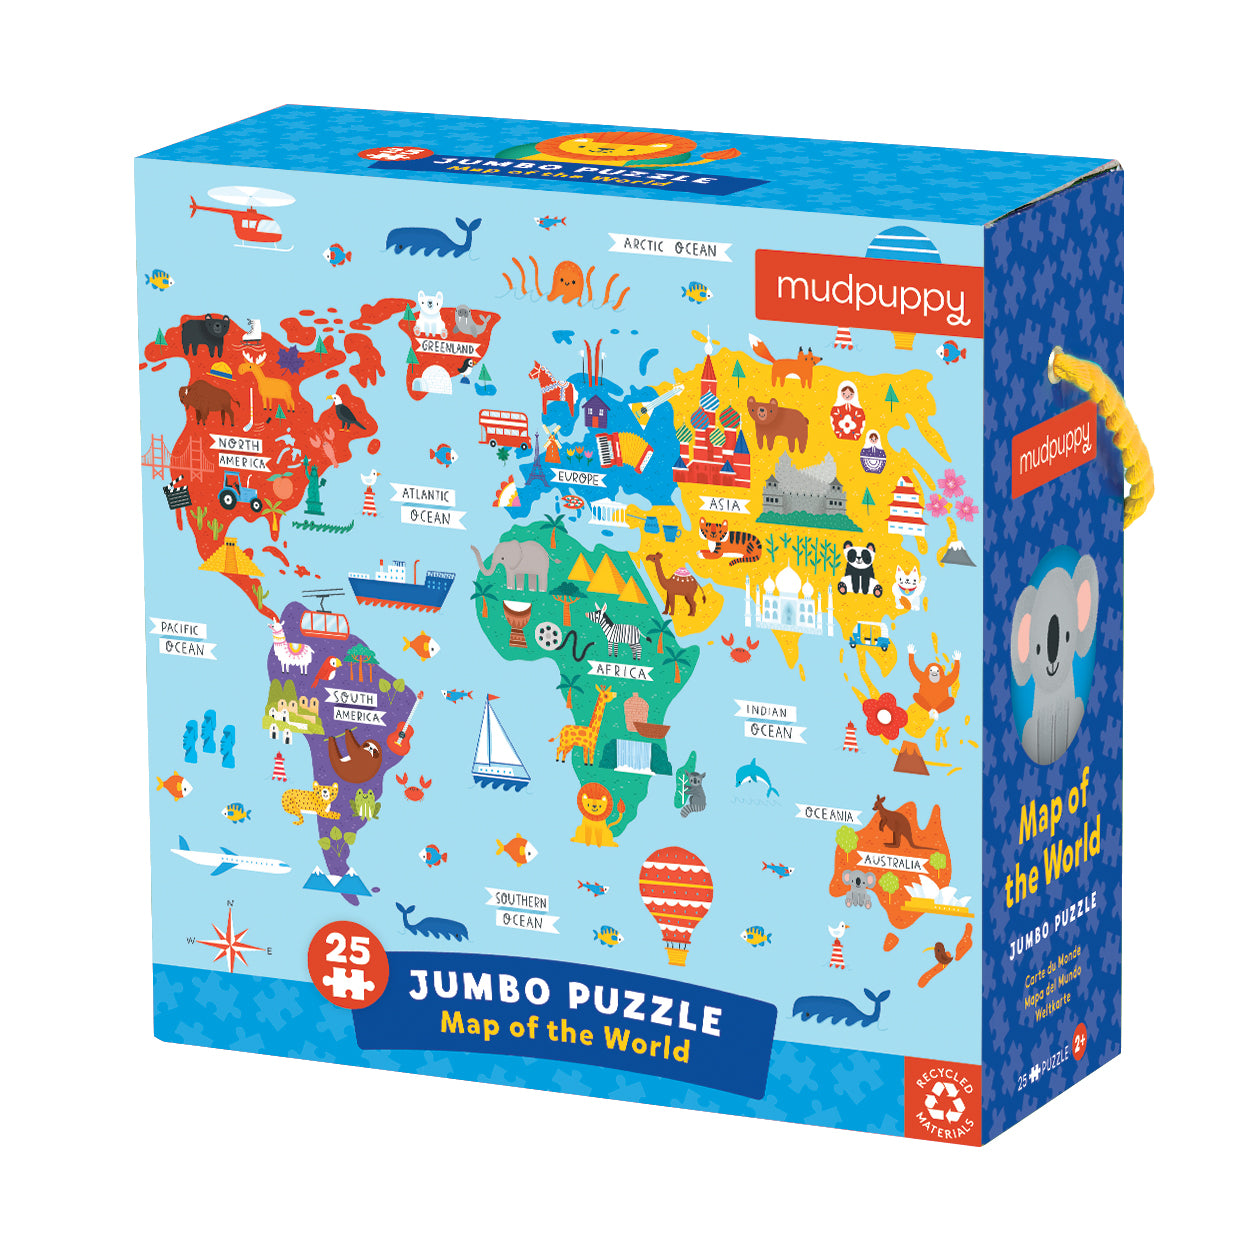 Mudpuppy Map of the World Jumbo Puzzle 25pcs